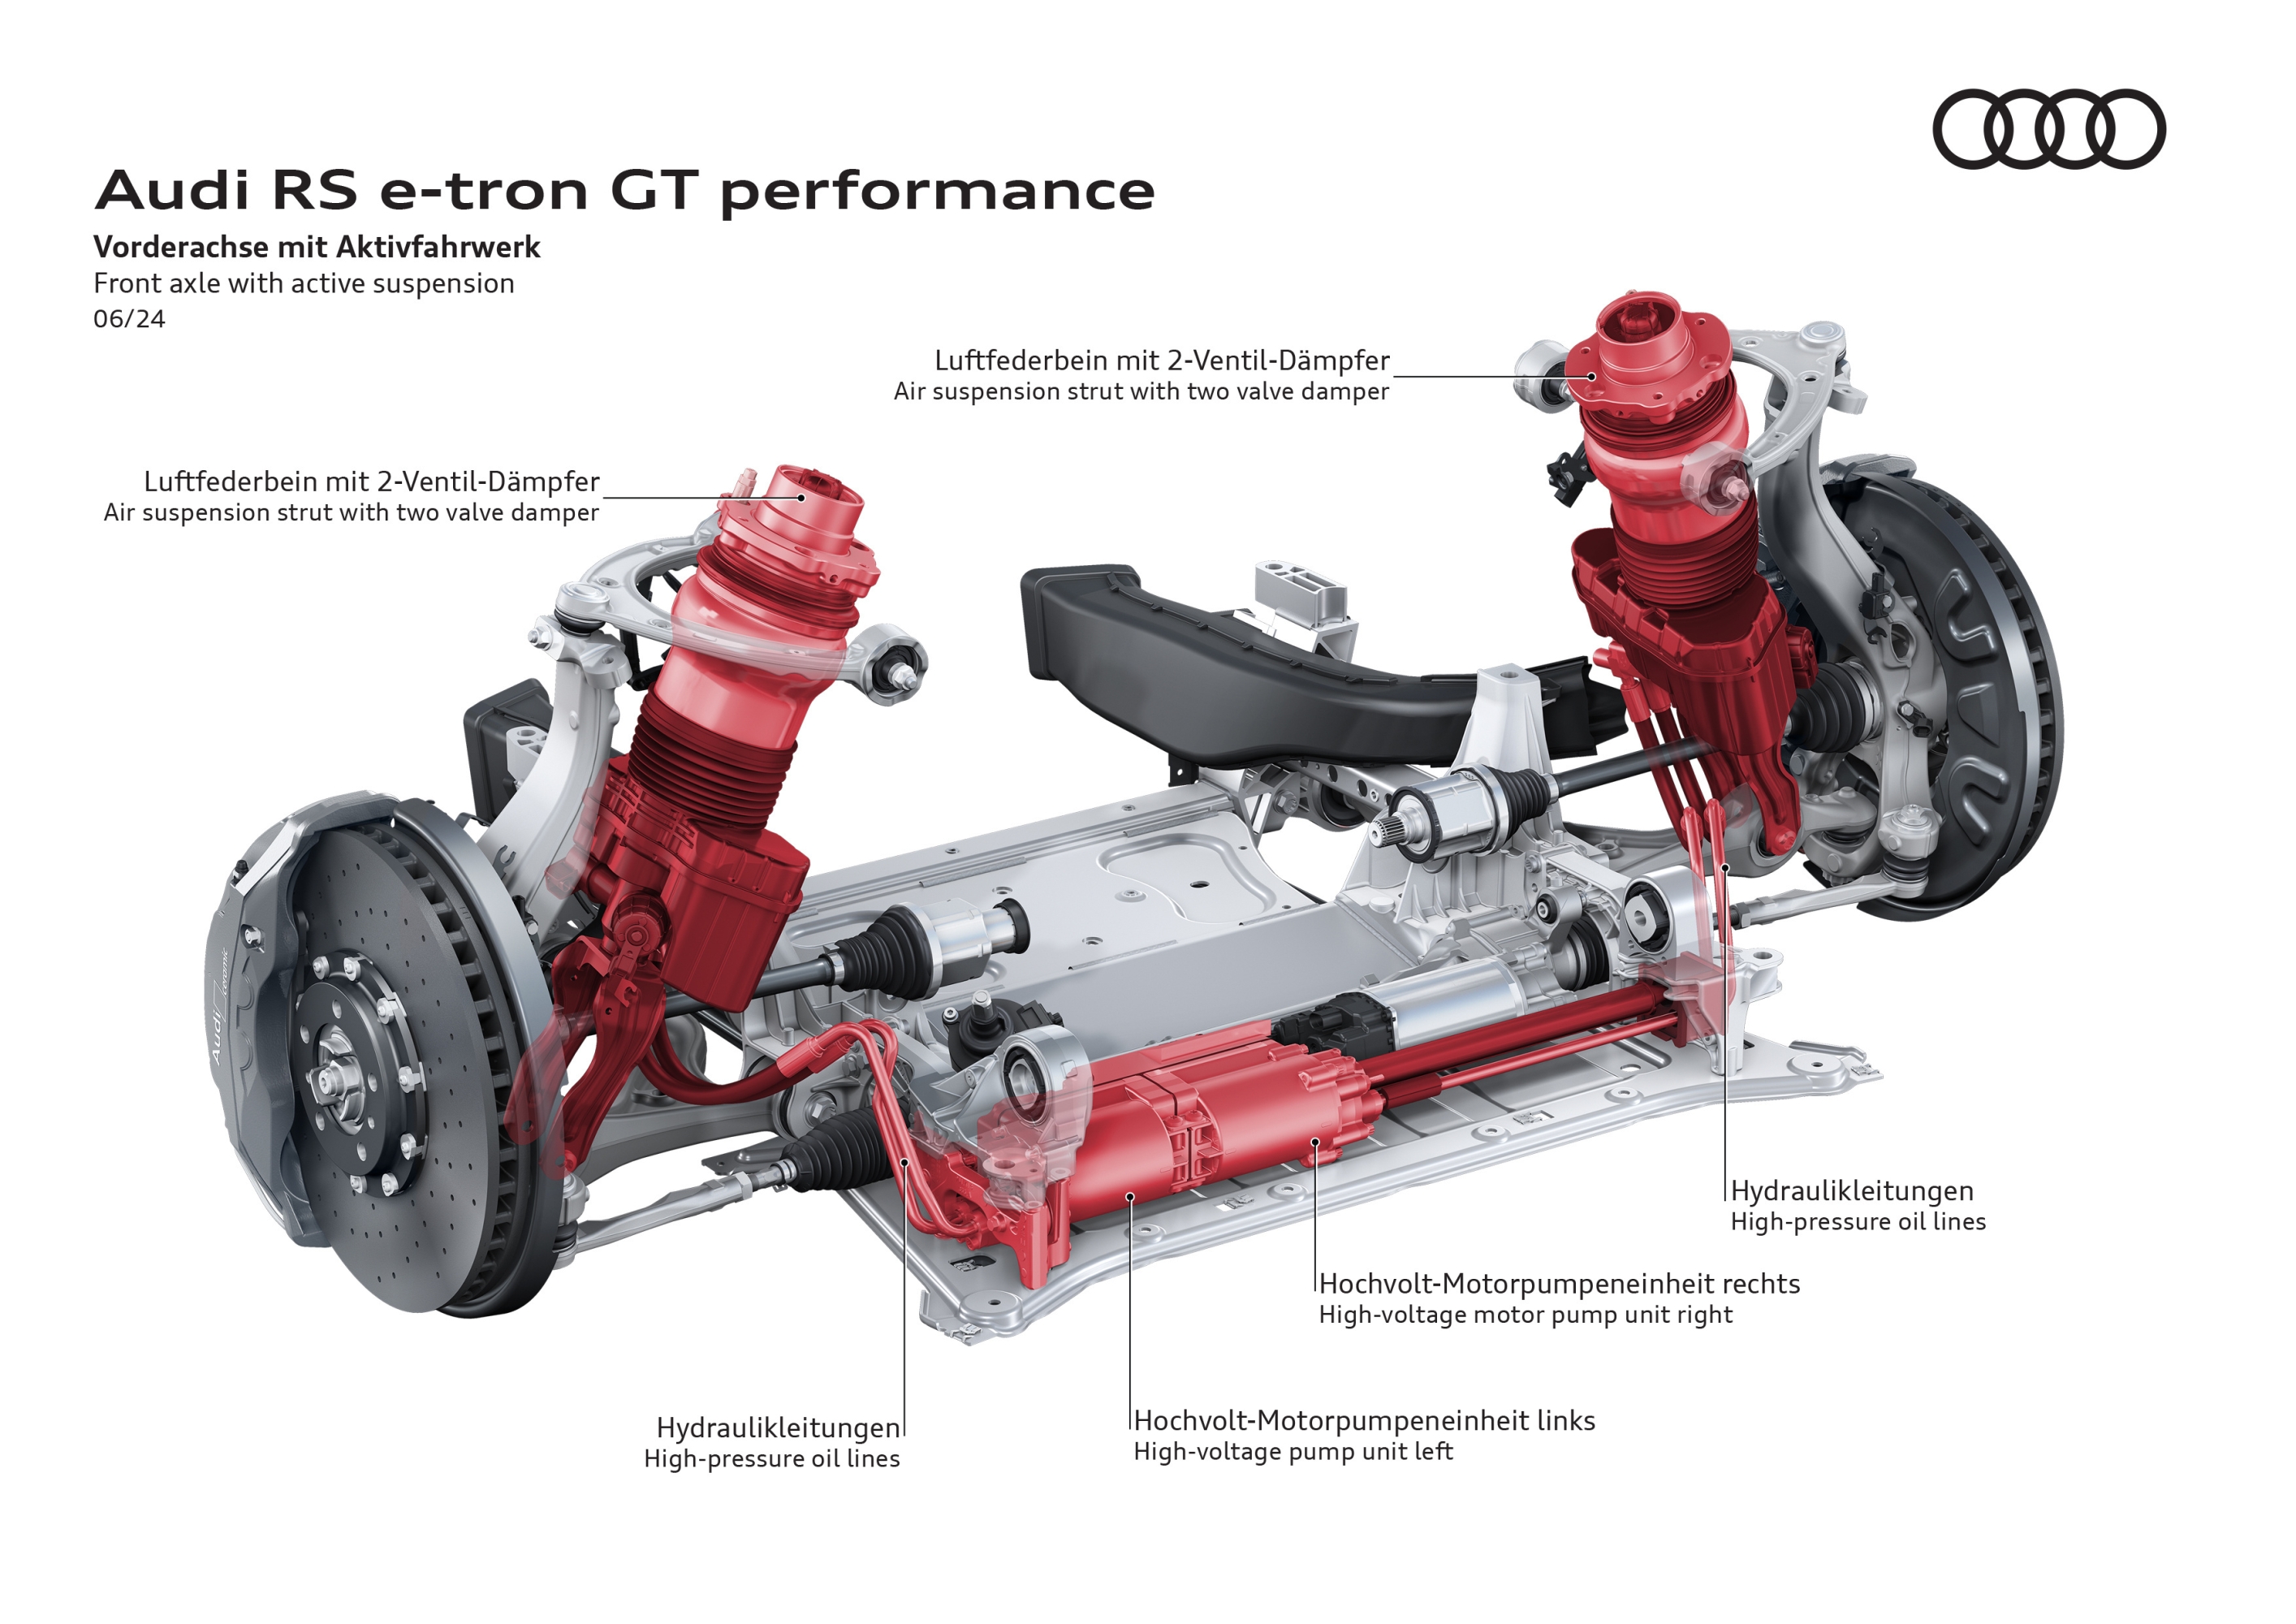 Prestaciones del Audi RS e-tron GT